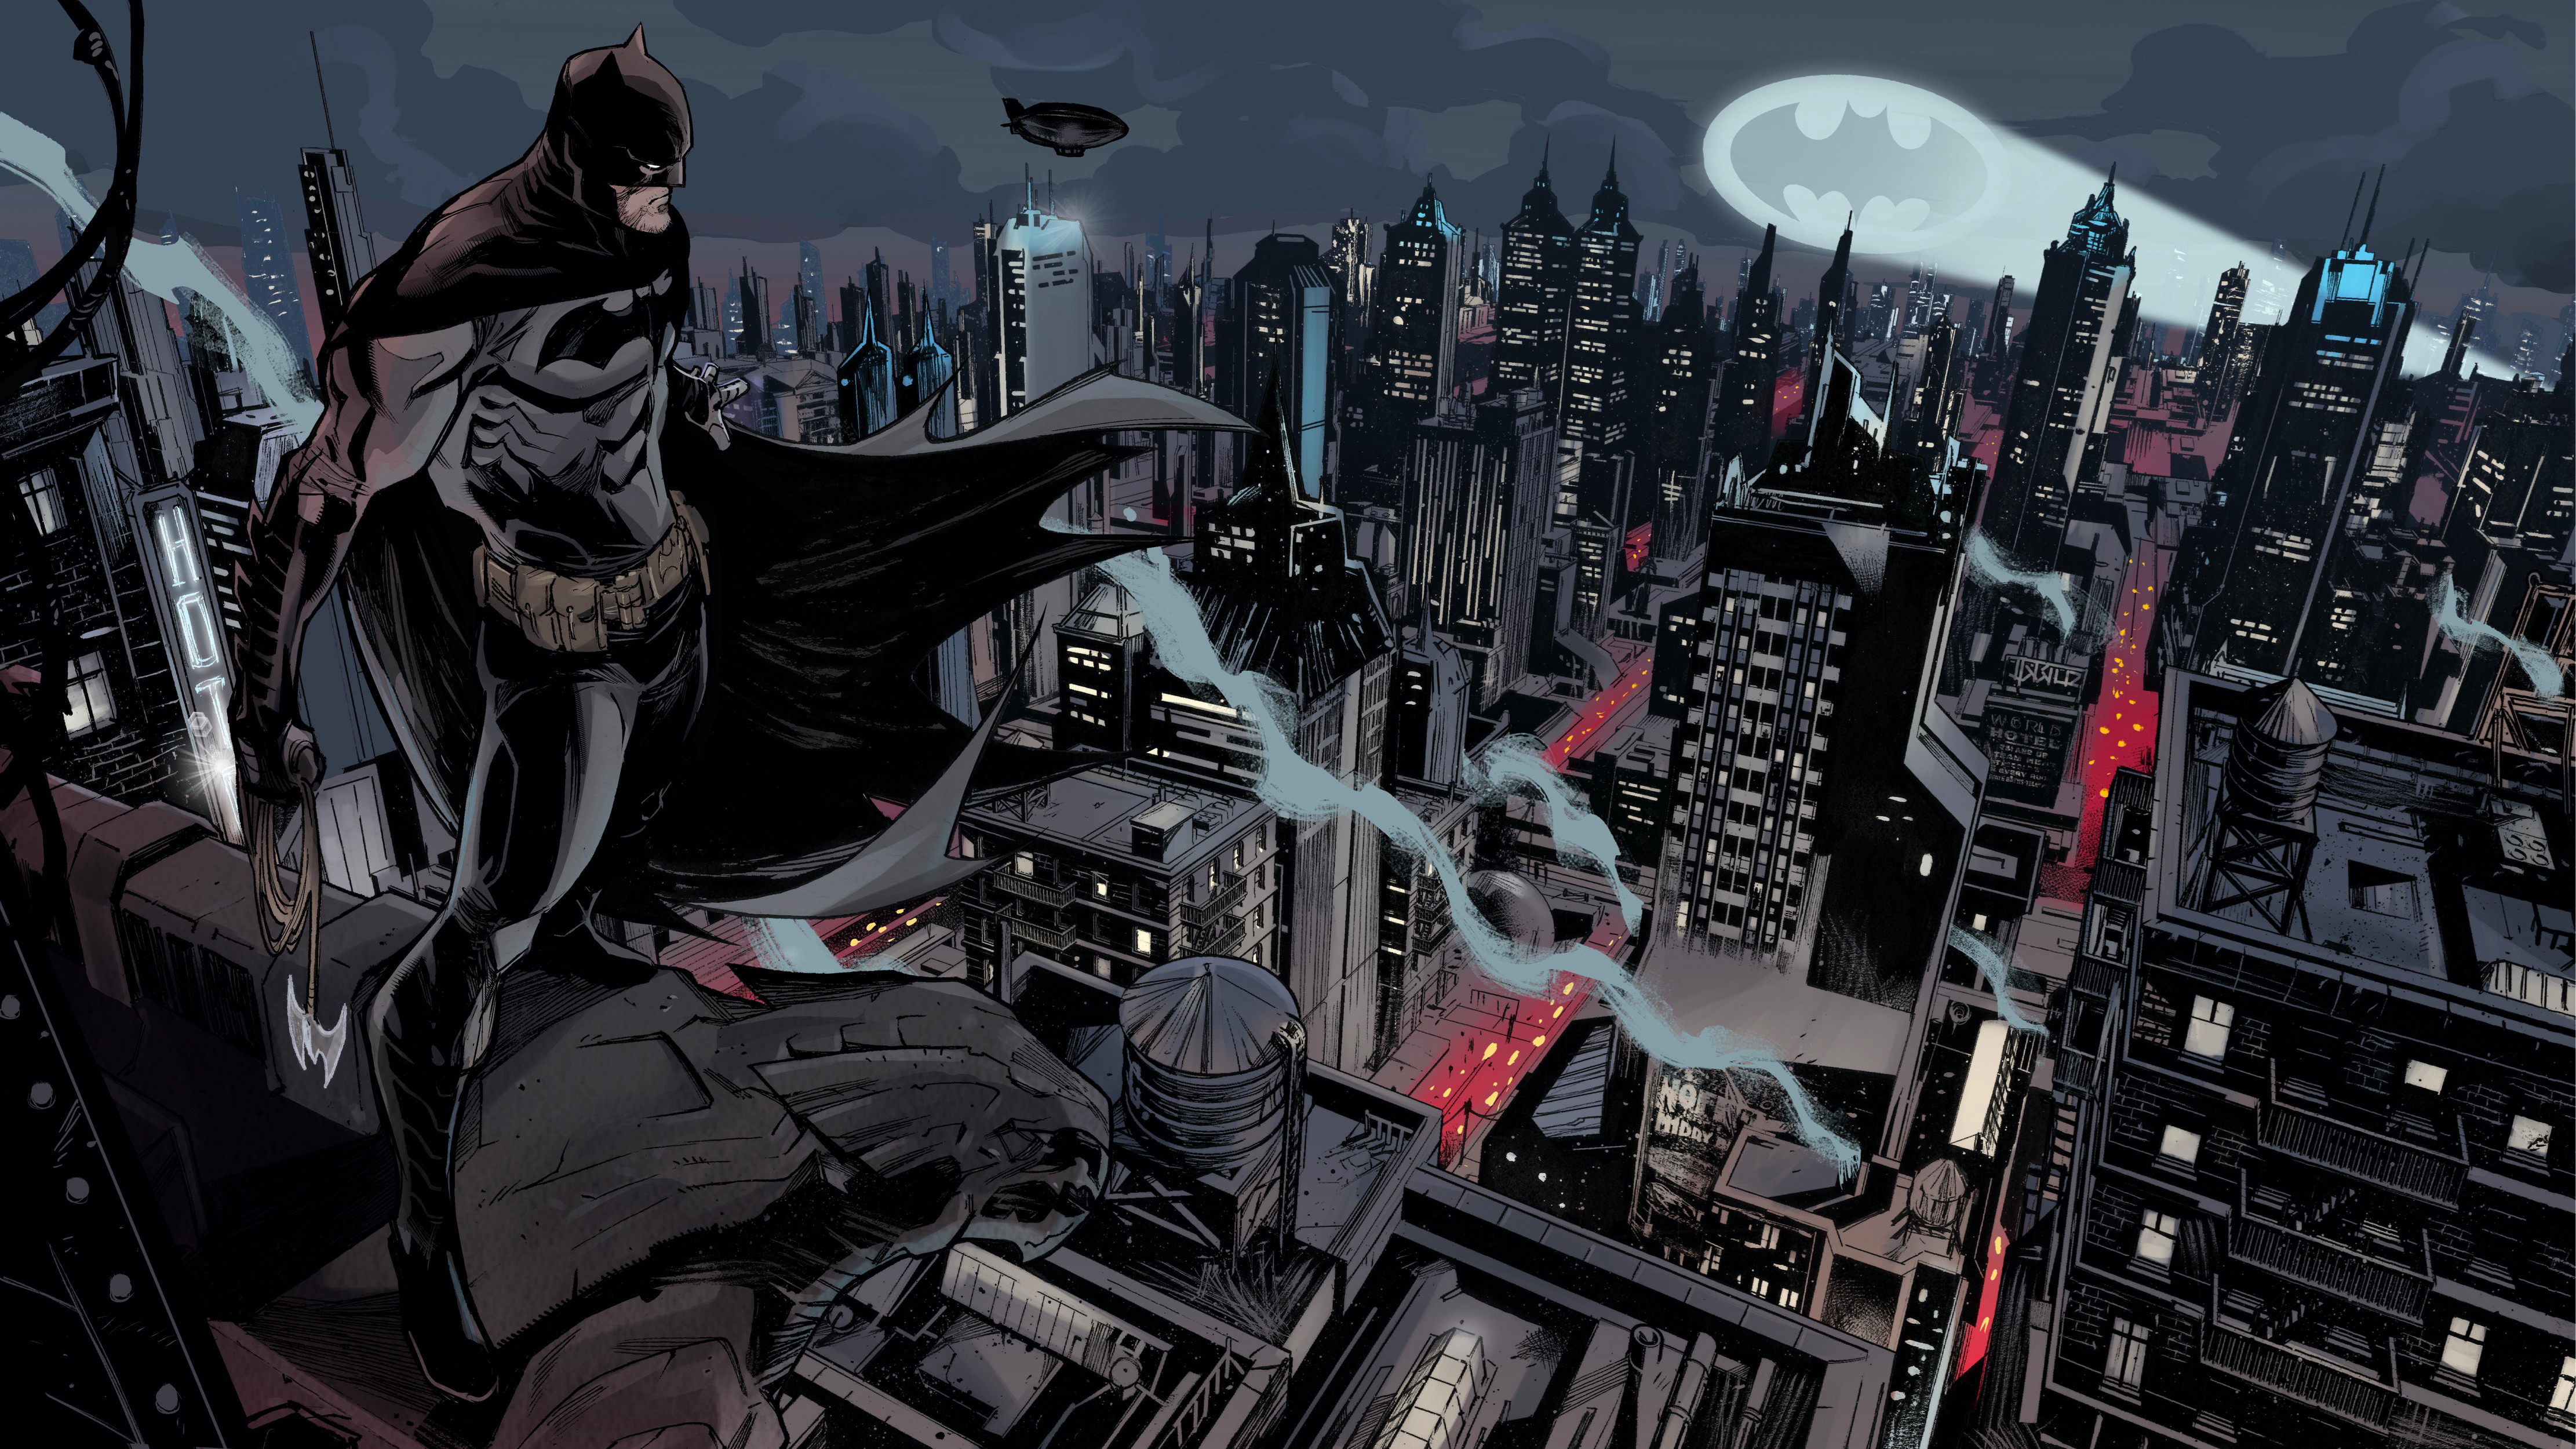 Batman Gotham City Dc Comics 4K Wallpaper,Hd Superheroes Wallpapers,4K